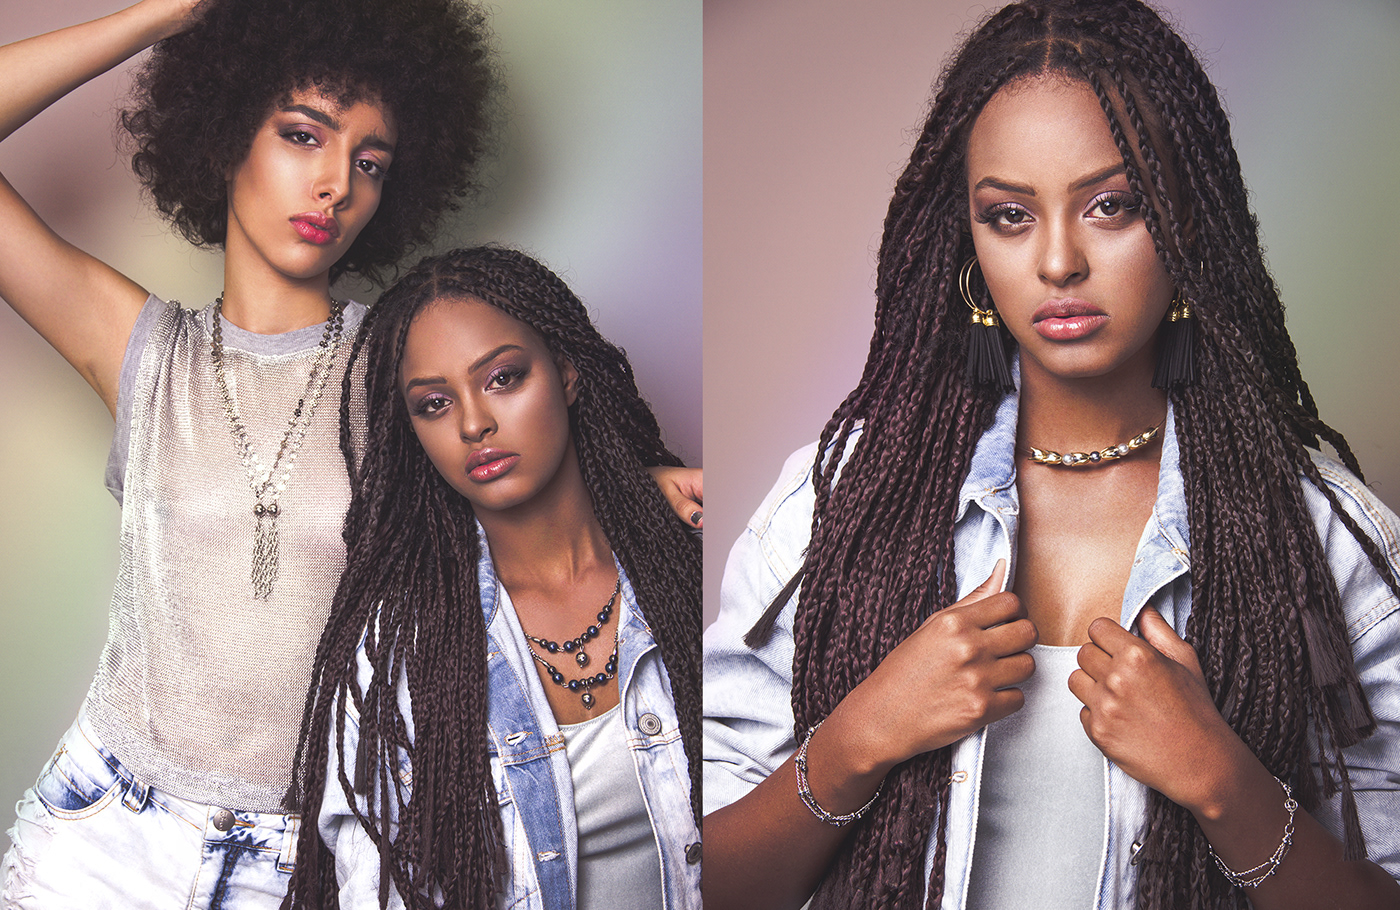 fashion accessory jewelry beauty photoshoot editorial moda feminina ensaio feminino beleza negra